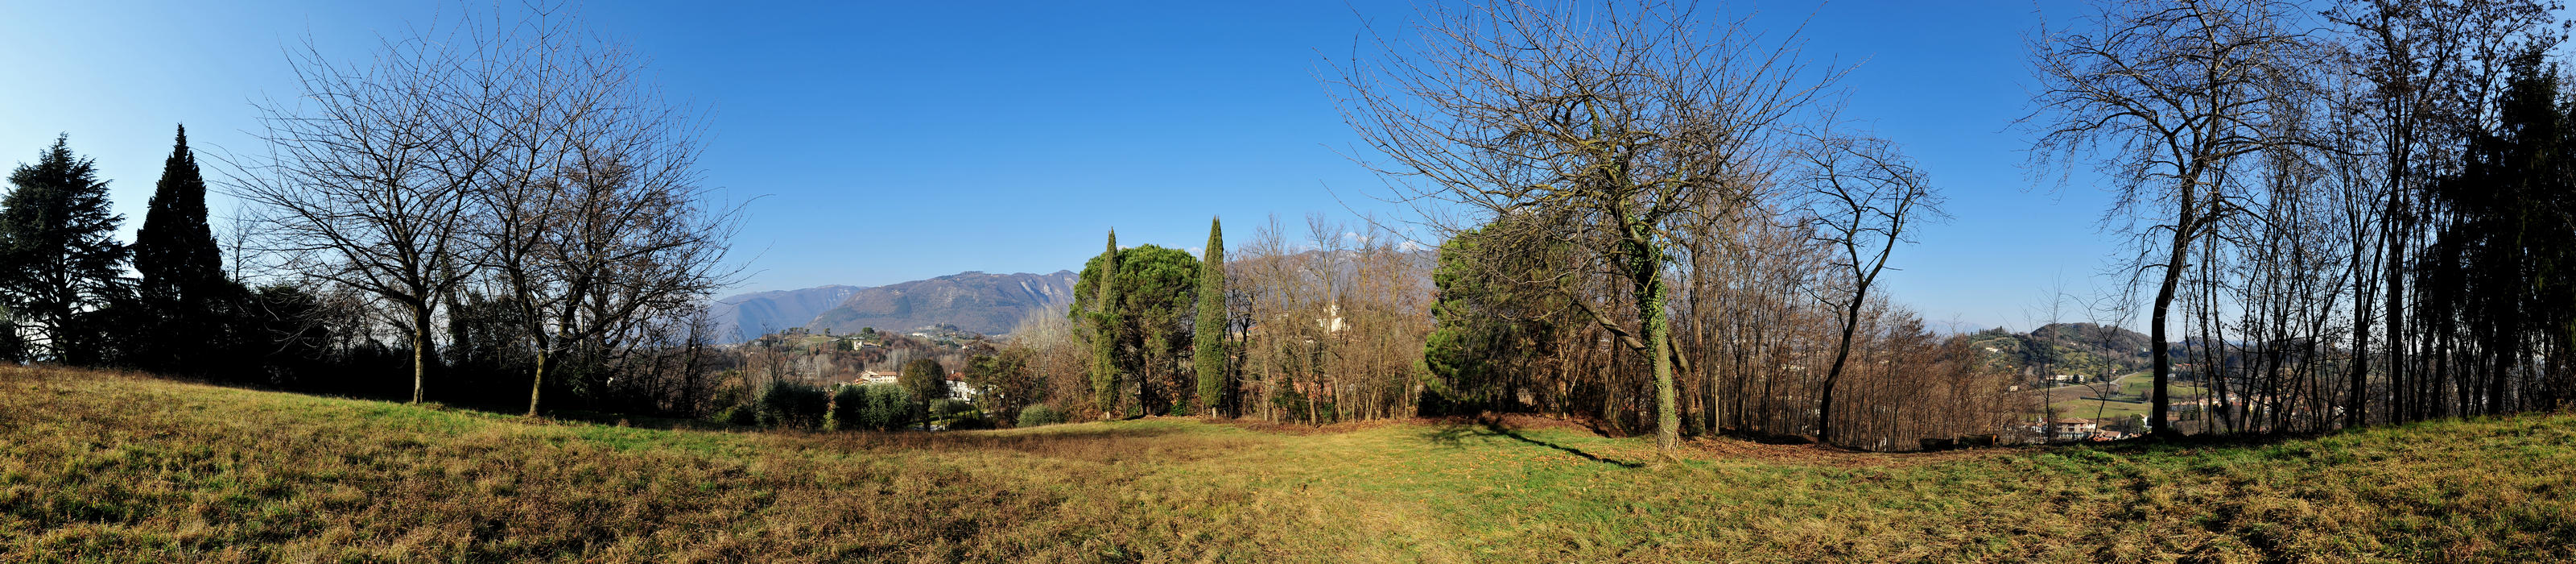 Sentieri Natura Mussolente, dal monte Gallo verso il monte Grappa - fotografia panoramica